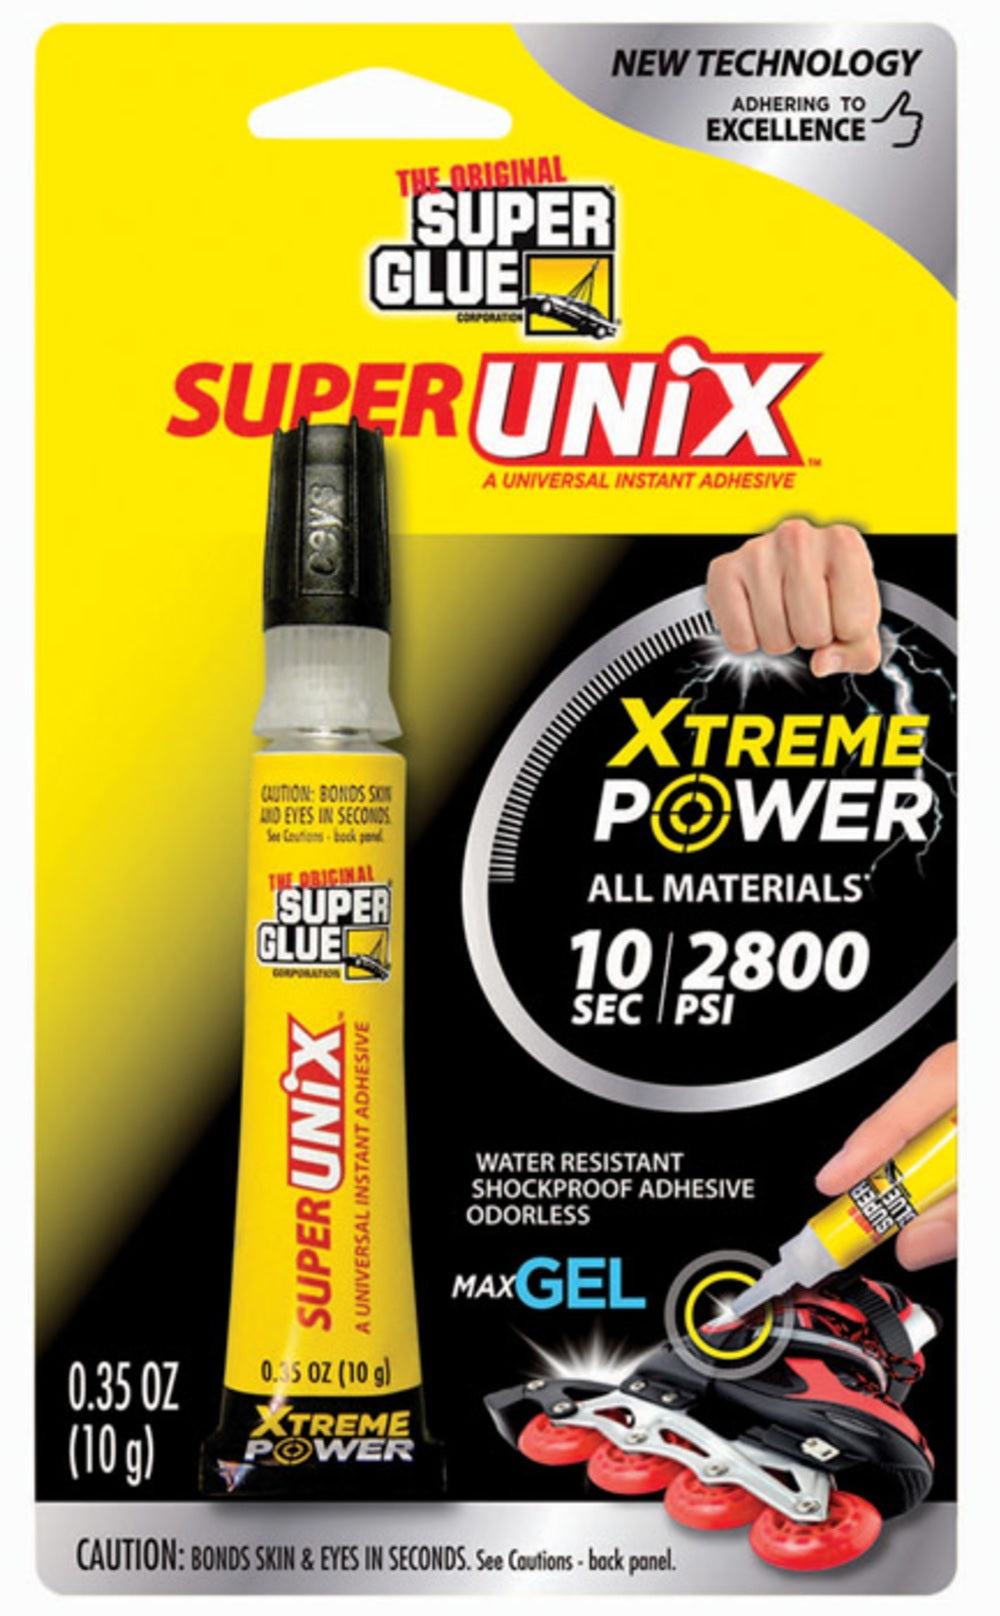 The Original Super Glue 90015 Super Unix All Purpose Super Glue, 0.35 Oz